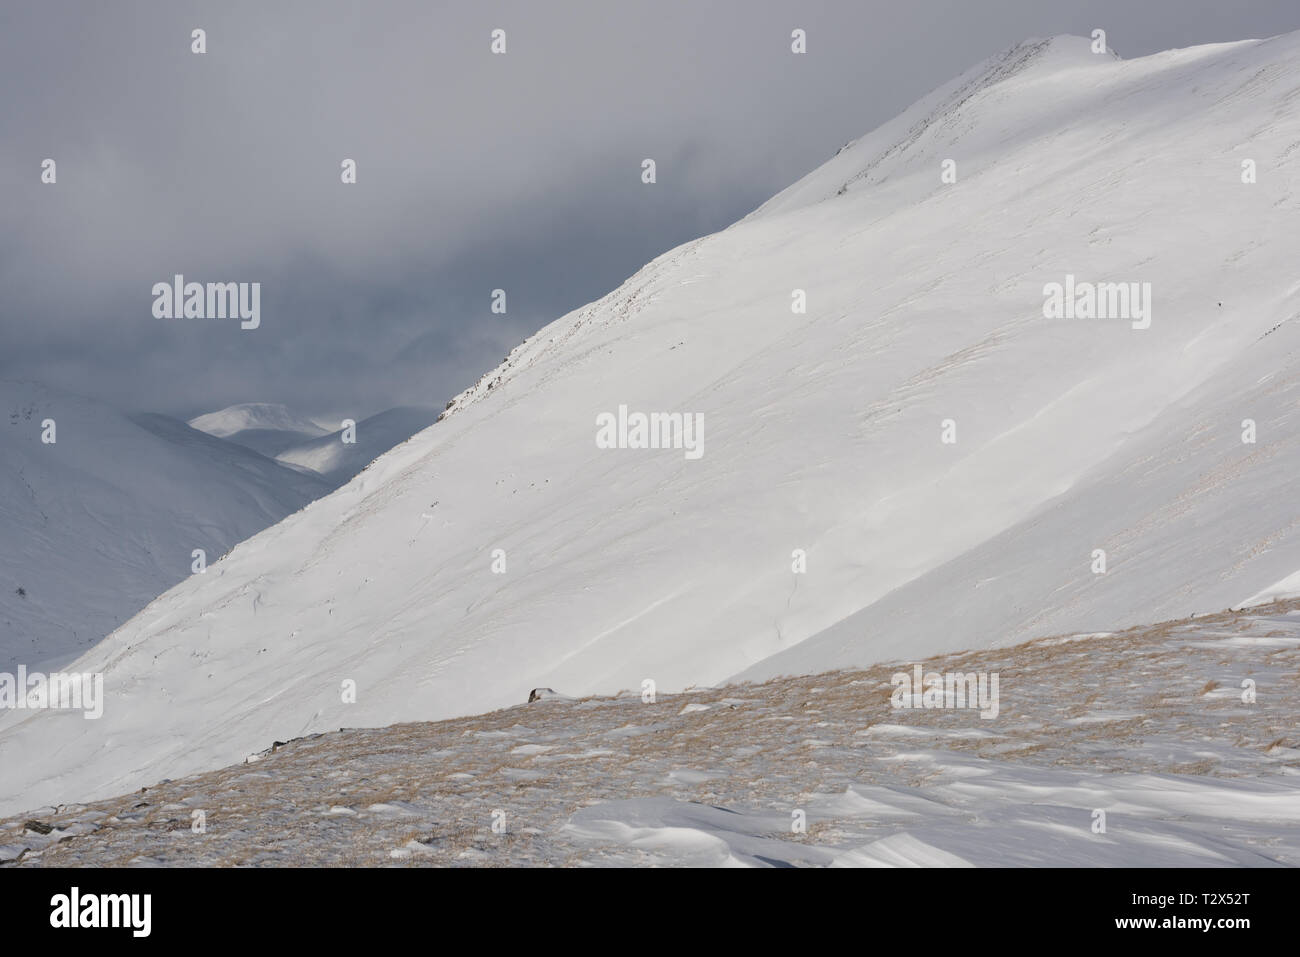 Scottish mountains in snow: western slopes of A' Chraileag, Scotland Stock Photo